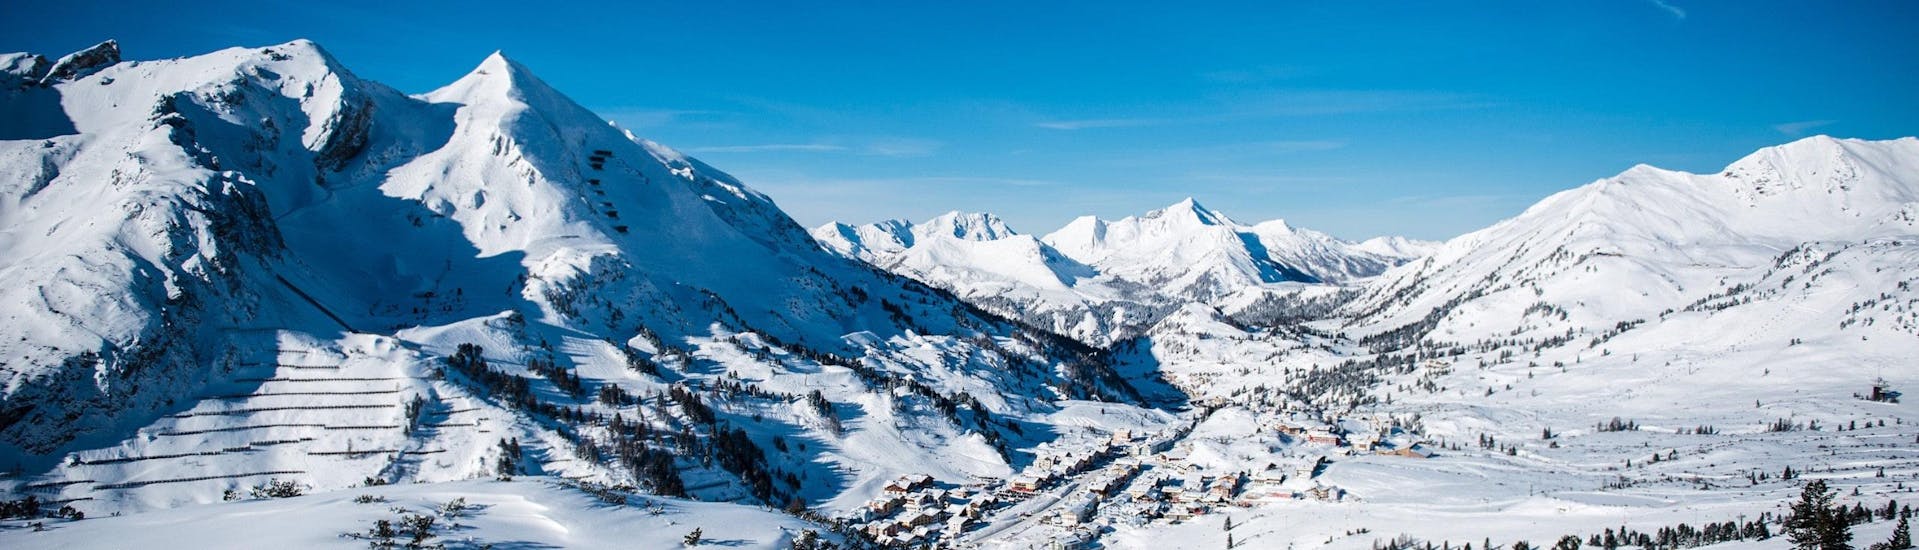 Ausblick auf die sonnige Berglandschaft beim Skifahren lernen mit den Skischulen in Obertauern.